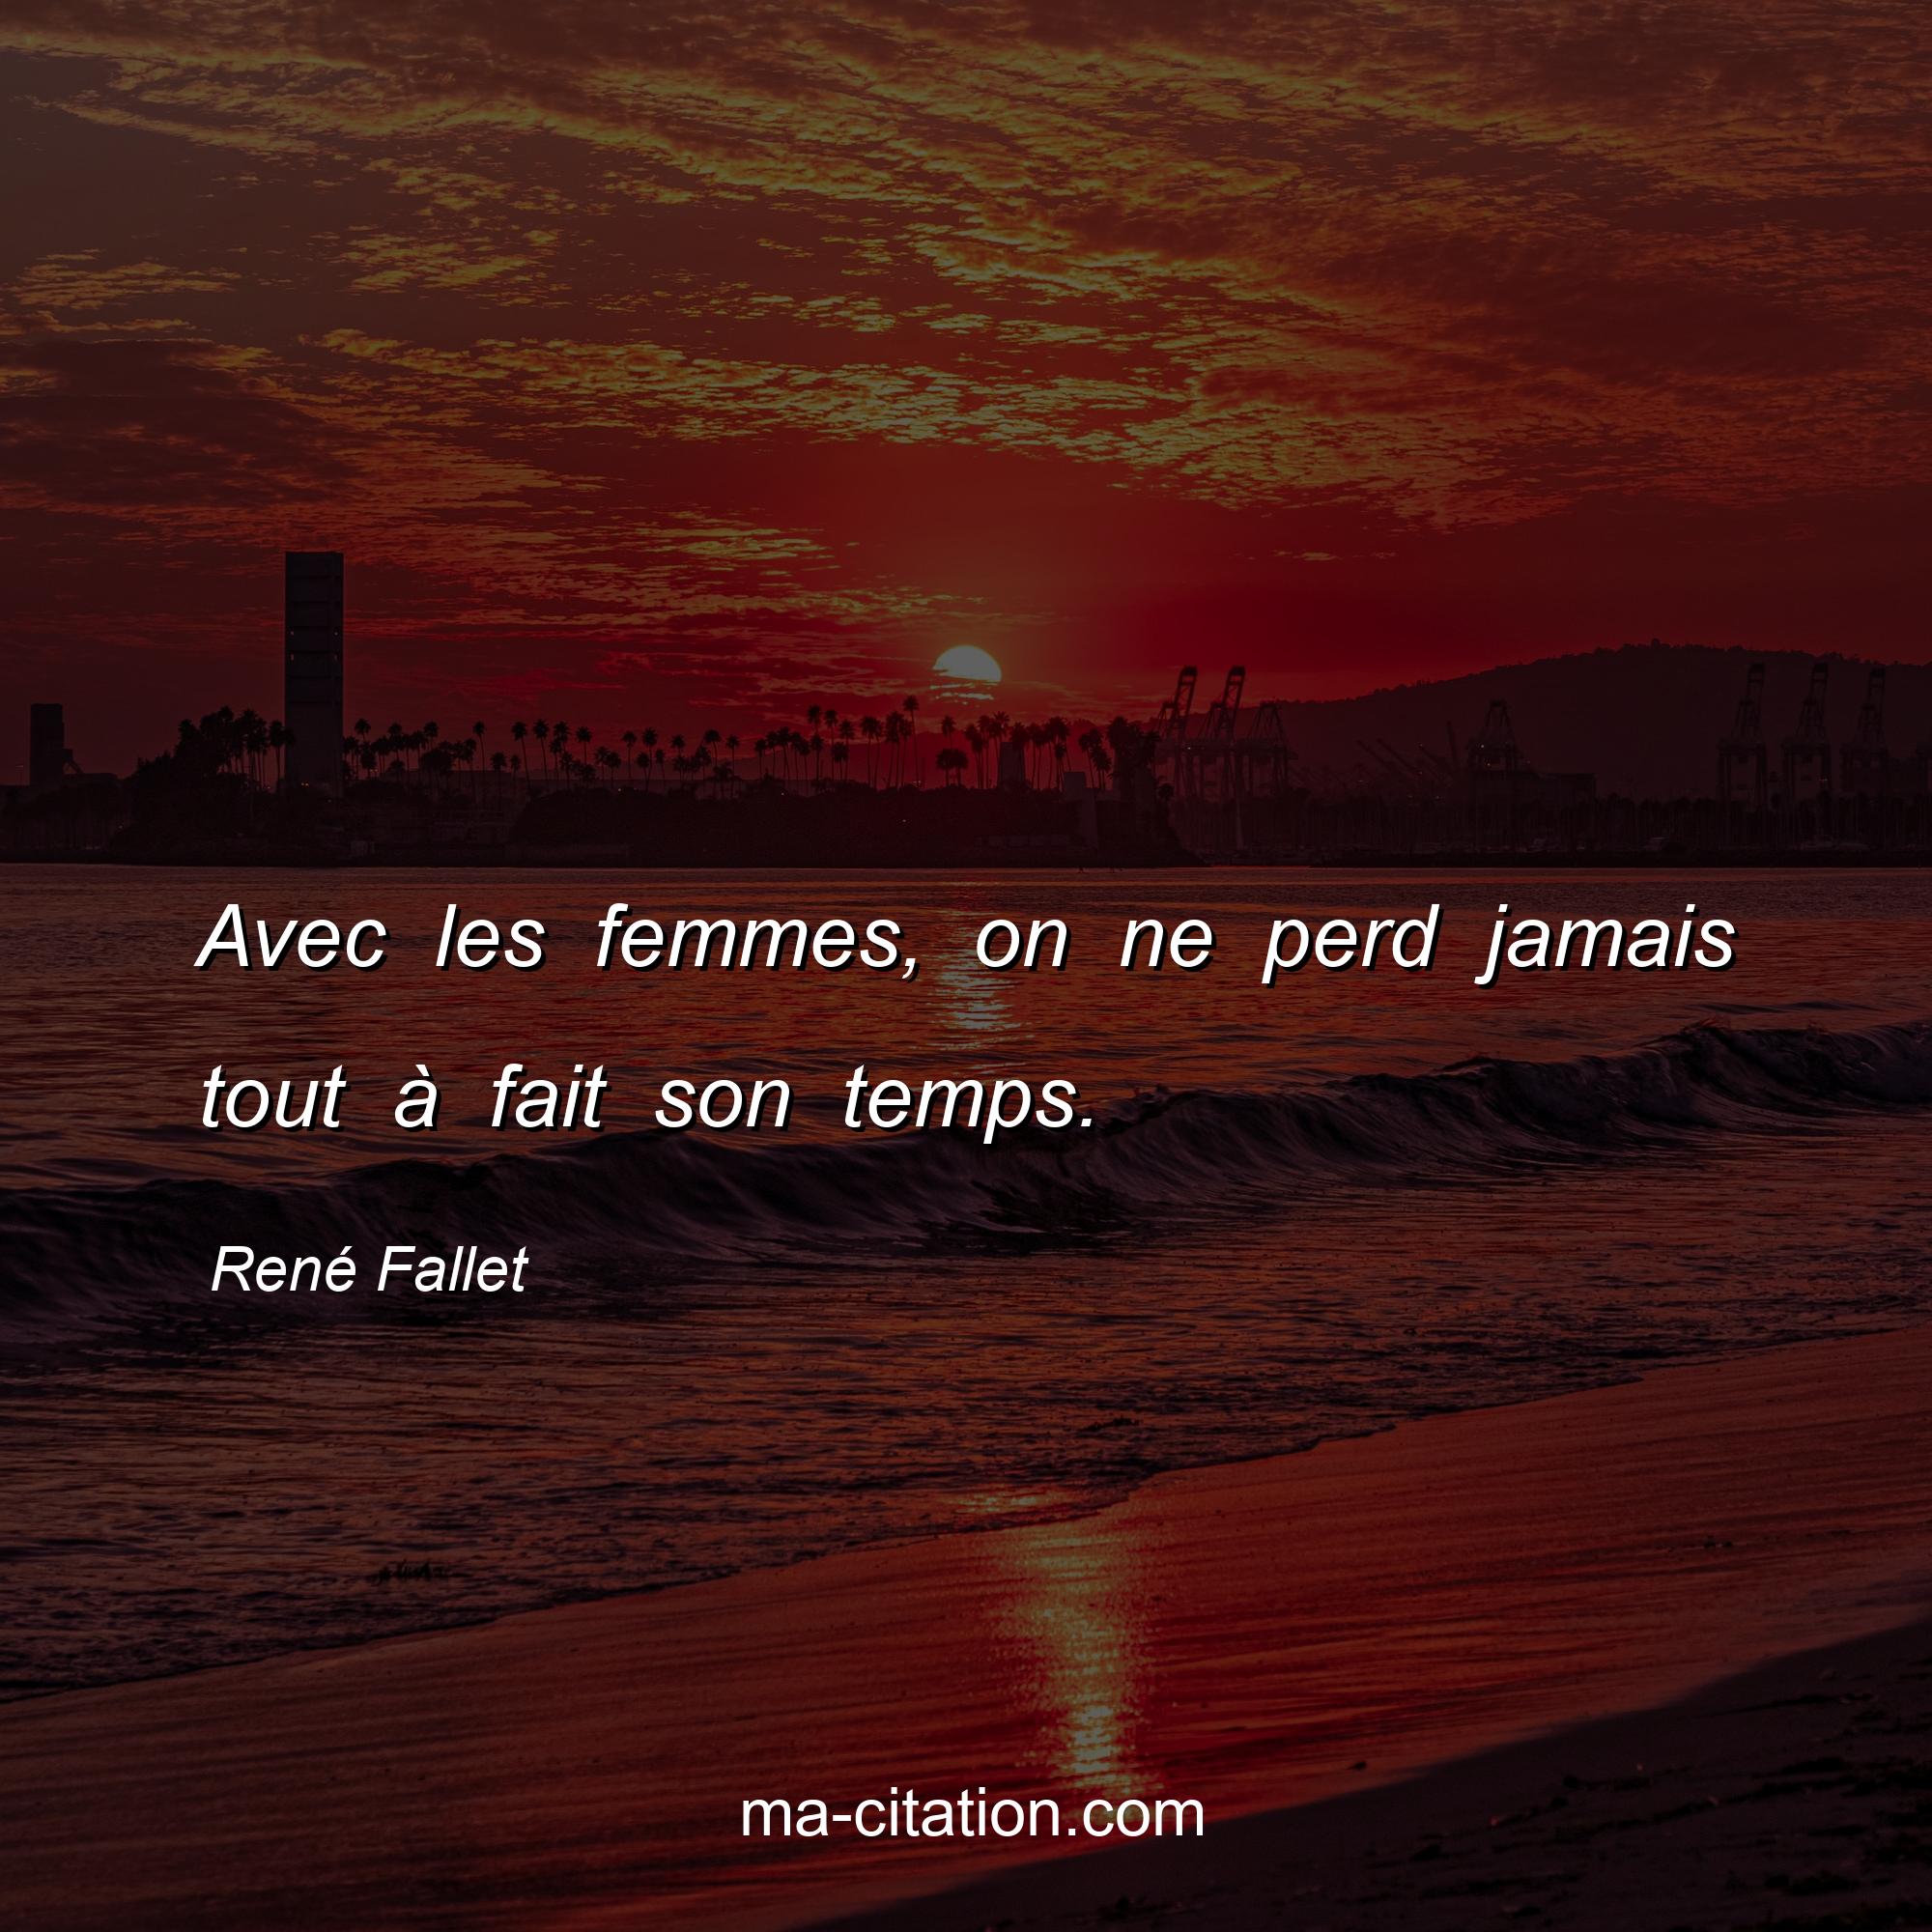 René Fallet : Avec les femmes, on ne perd jamais tout à fait son temps.